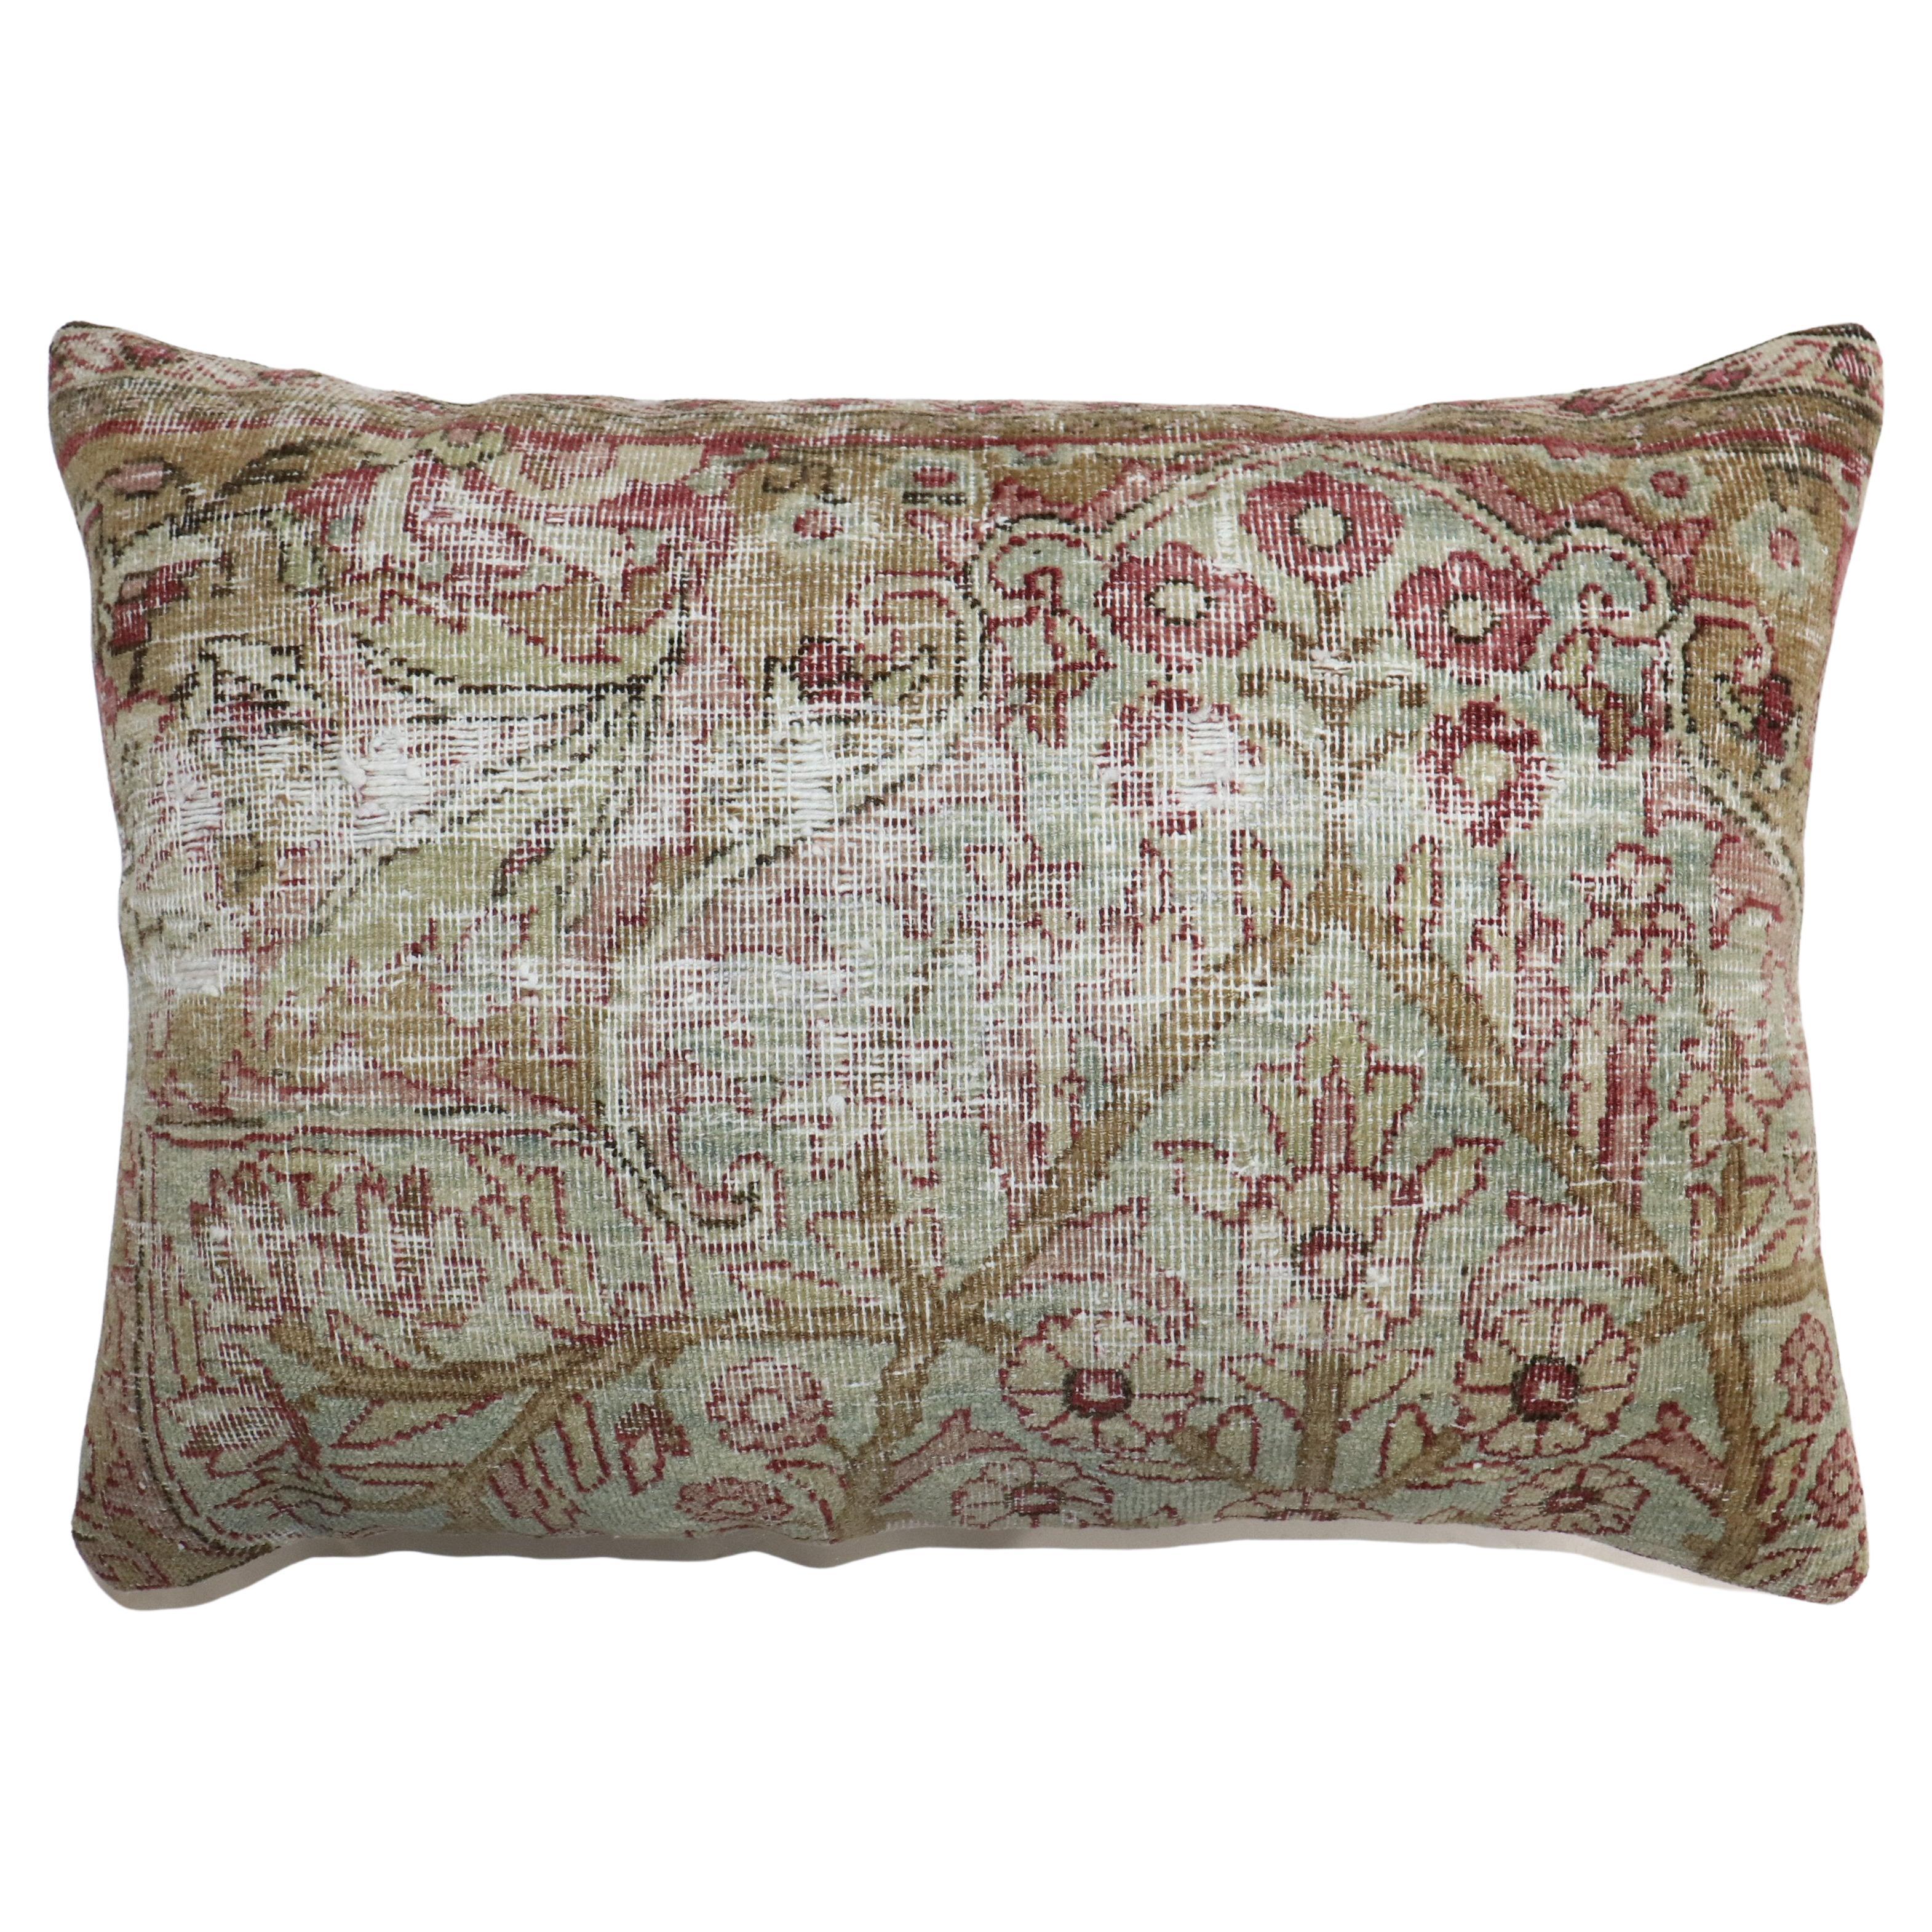 Zabihi Collection Worn Persian Kerman Rug Pillow